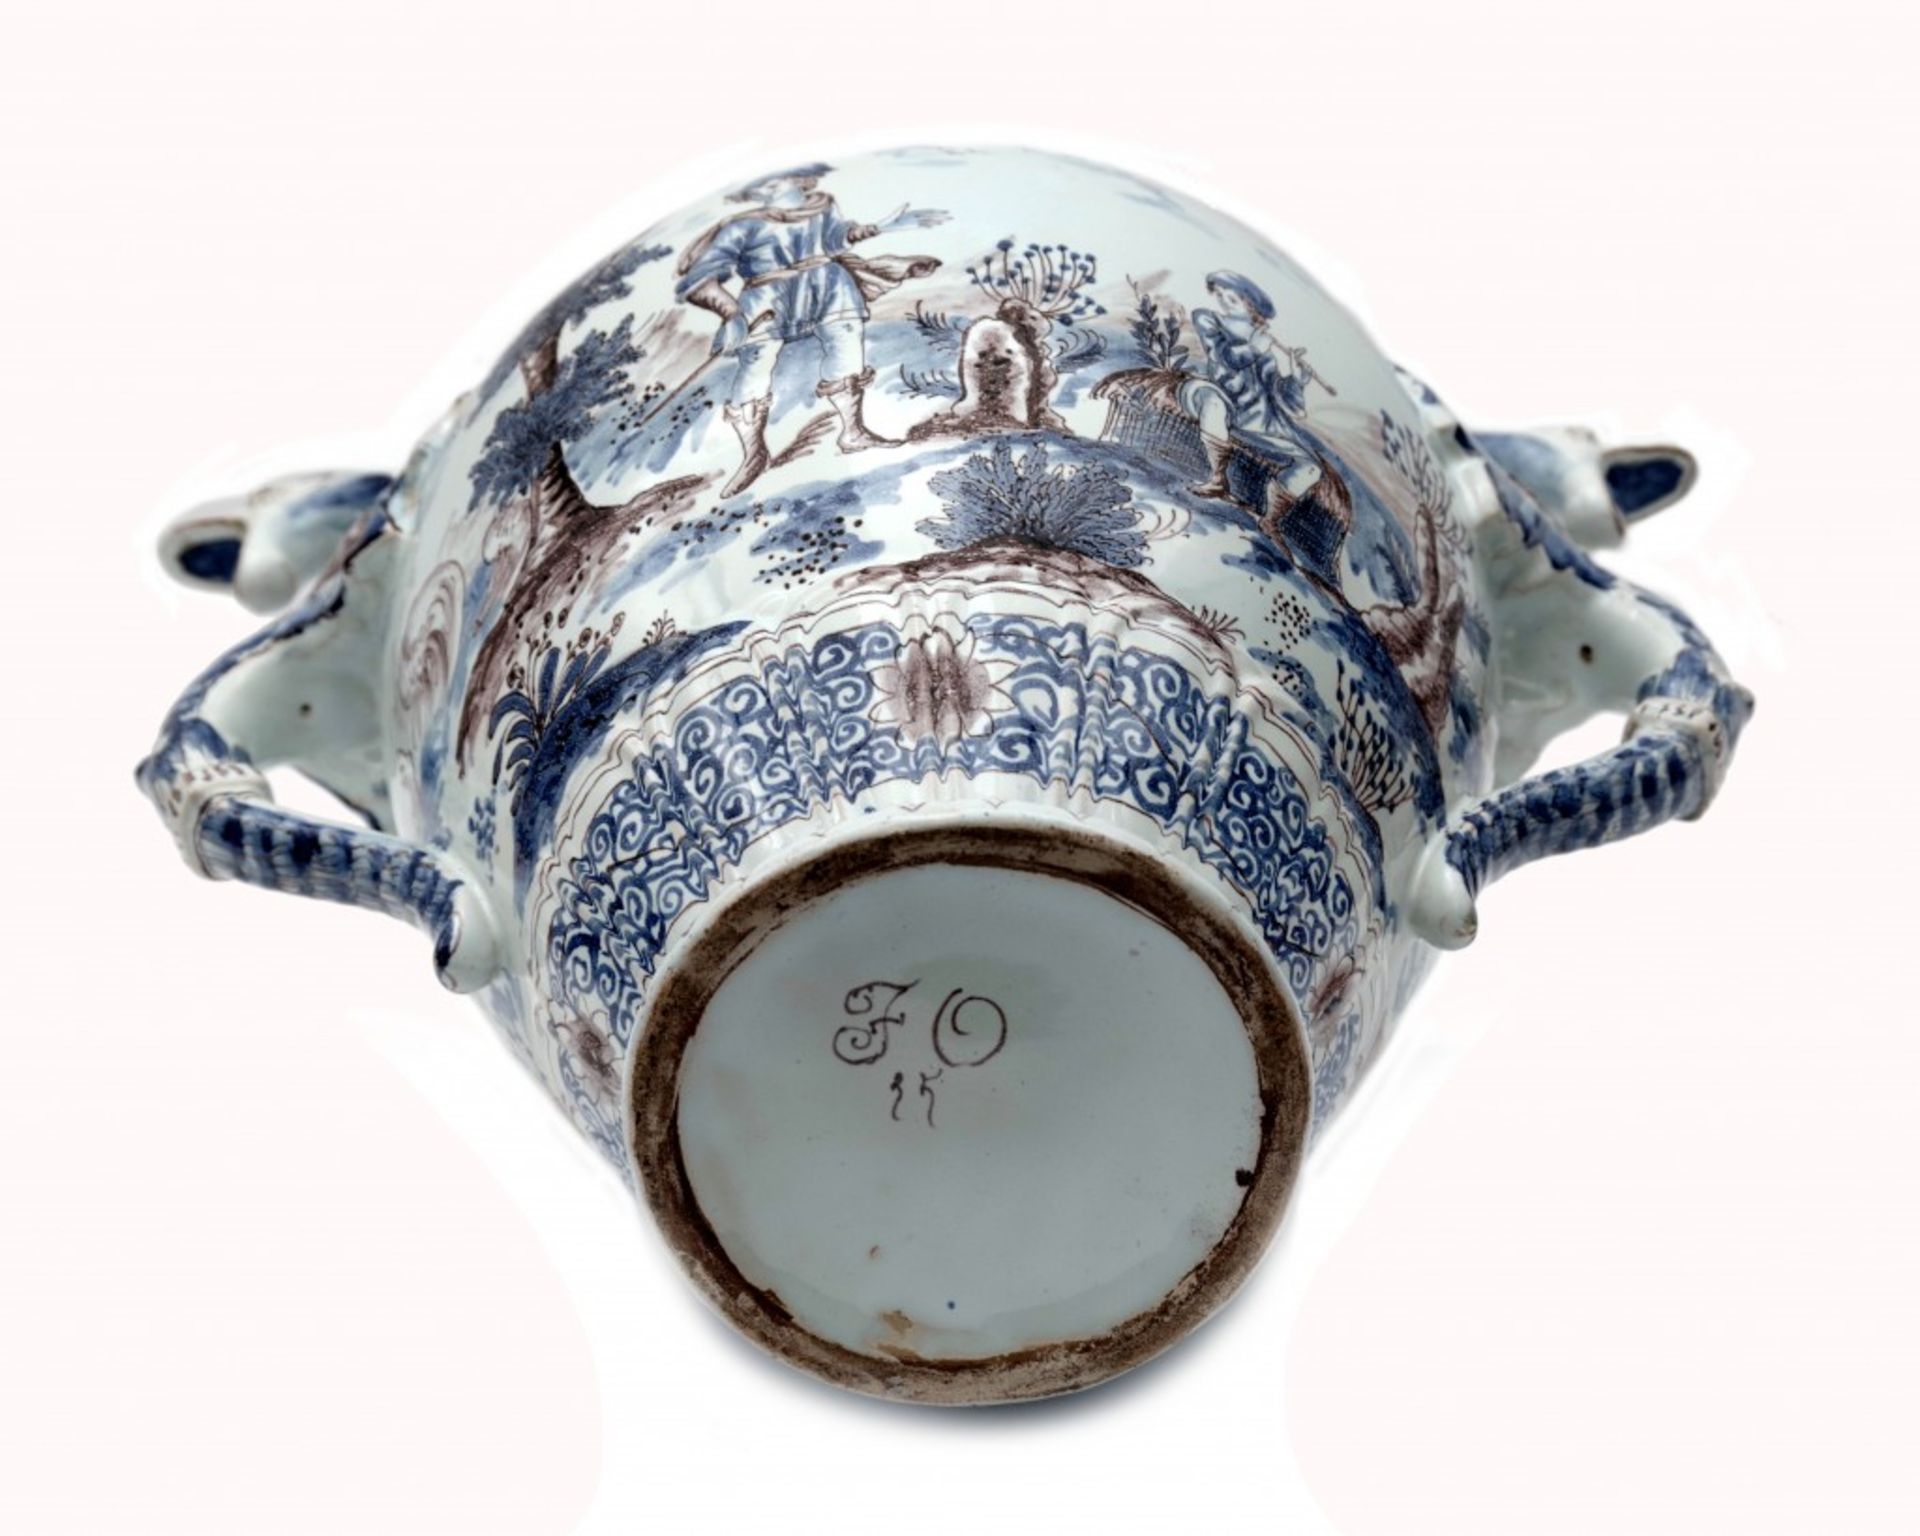 Fayence-Vase im Stil der Manufaktur in Nevers - Image 4 of 4